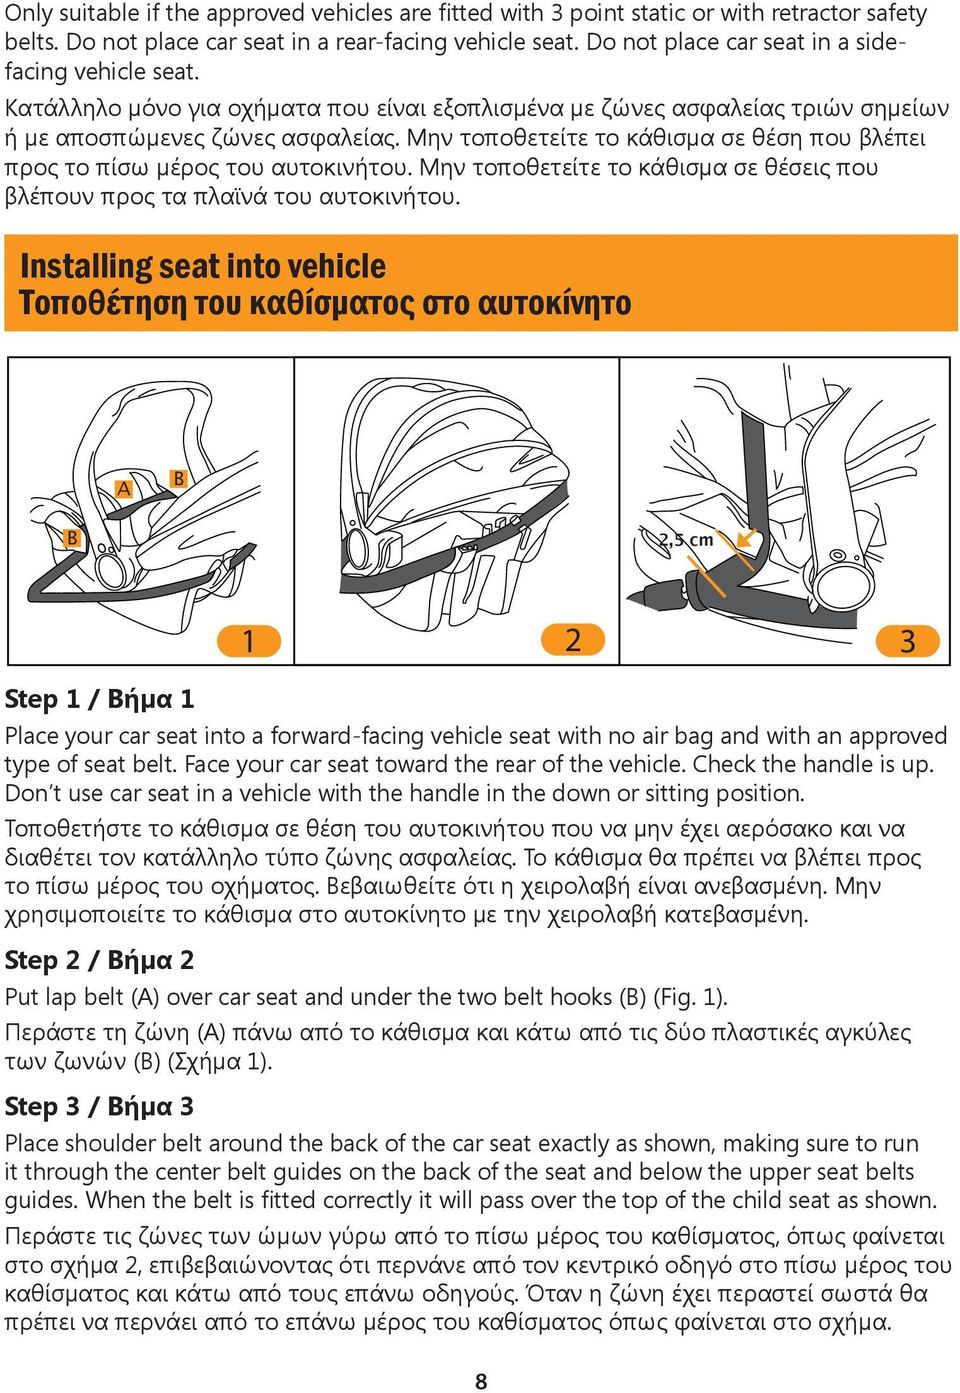 Μην τοποθετείτε το κάθισμα σε θέση που βλέπει προς το πίσω μέρος του αυτοκινήτου. Μην τοποθετείτε το κάθισμα σε θέσεις που βλέπουν προς τα πλαϊνά του αυτοκινήτου.